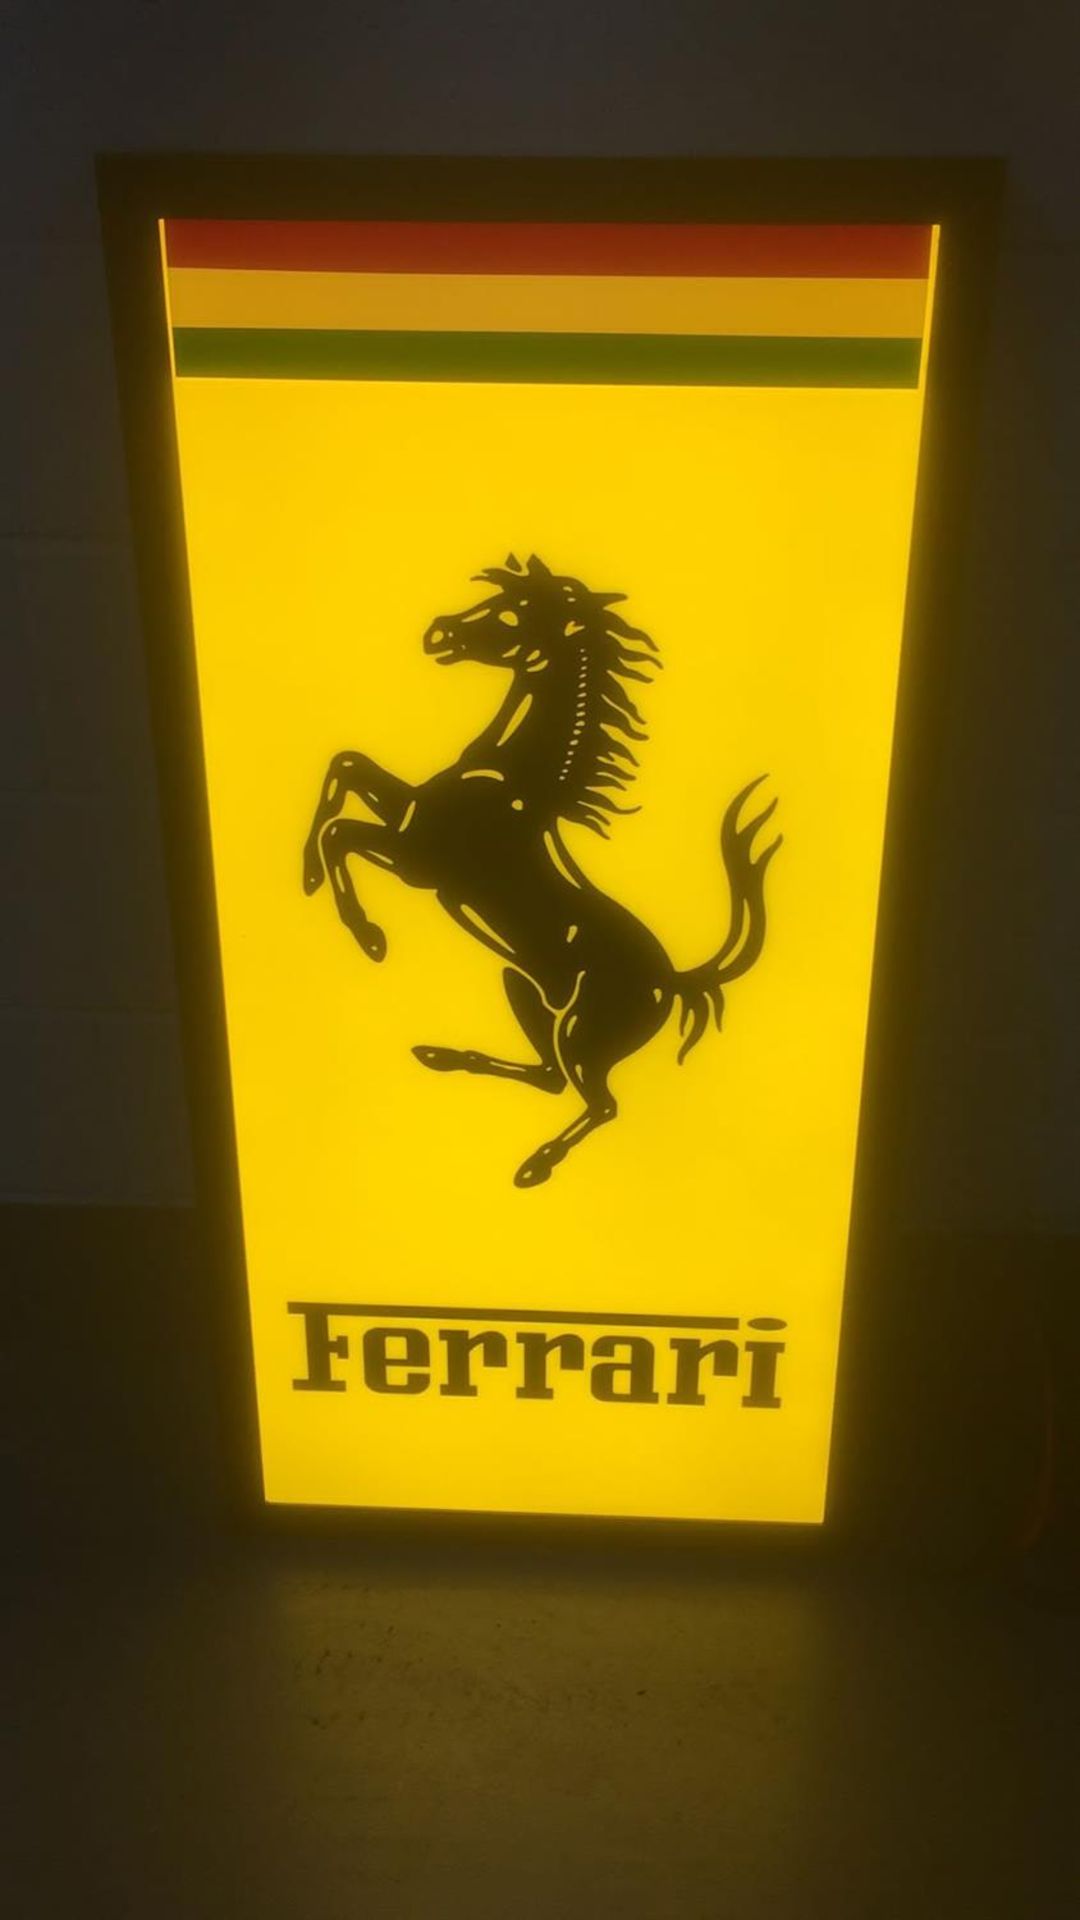 Substantial Ferrari Style LED Illuminated Sign - Image 2 of 4